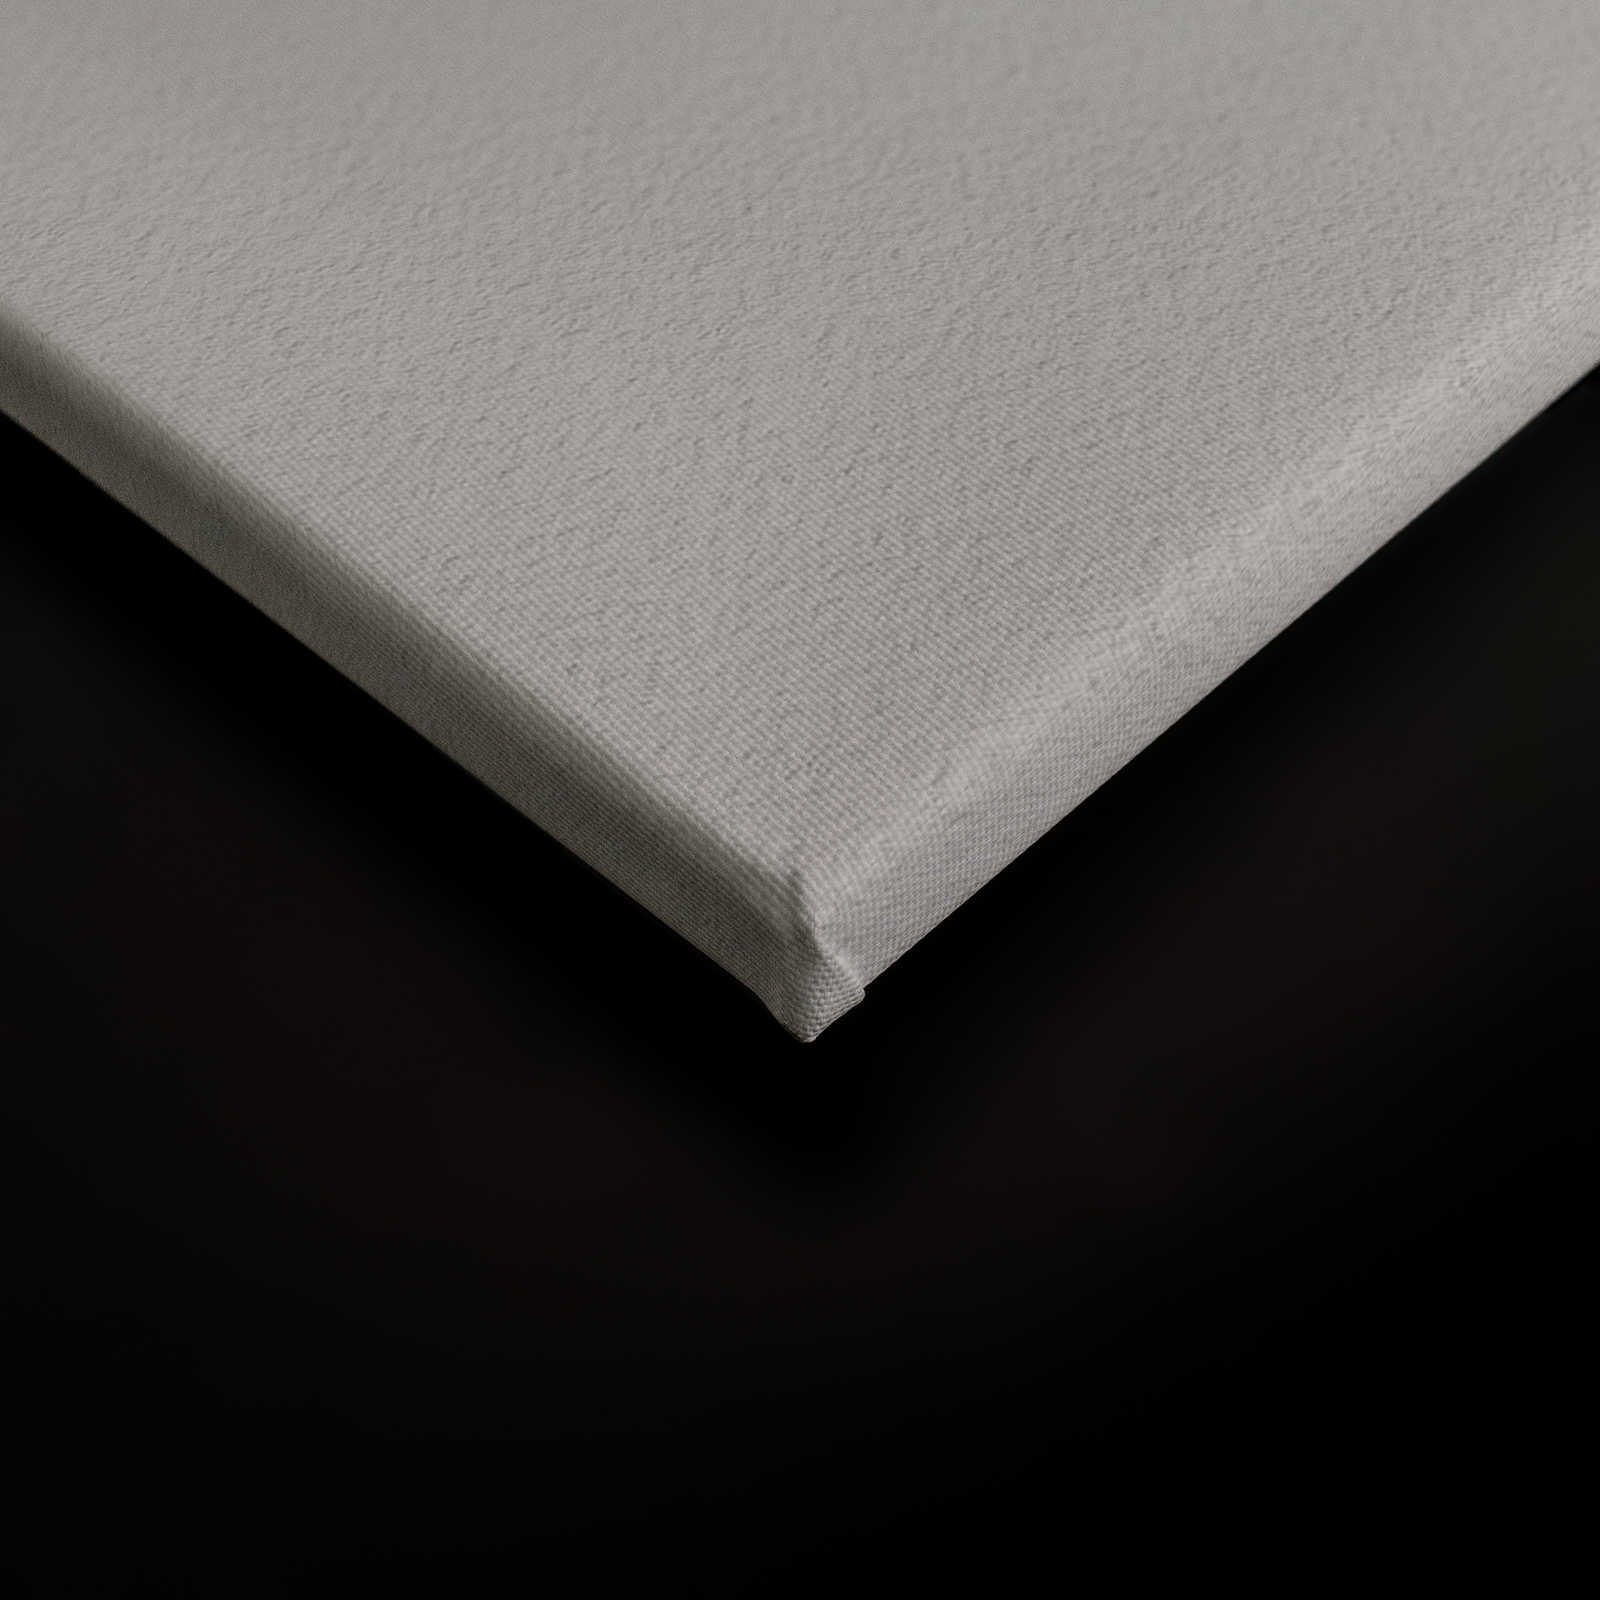             Layered paper 1 - Grafisches Leinwandbild mit Farbflächen in Büttenpapier Struktur – 1,20 m x 0,80 m
        